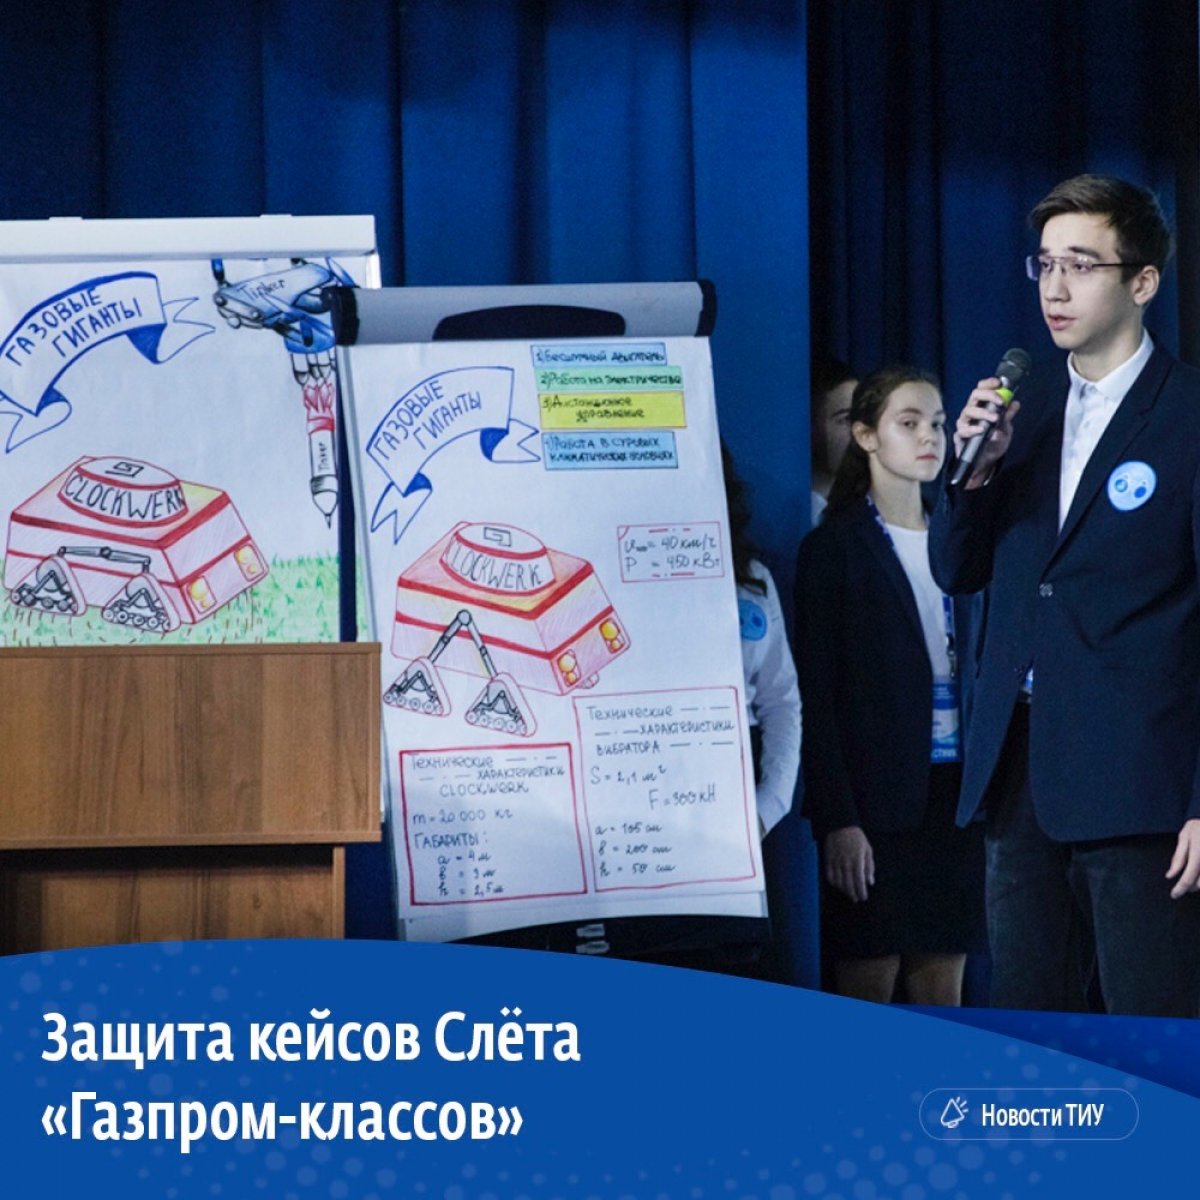 Всю прошлую неделю в стенах ТИУ проходил IV Слёт учащихся «Газпром-классов». Участники решали инженерные кейсы